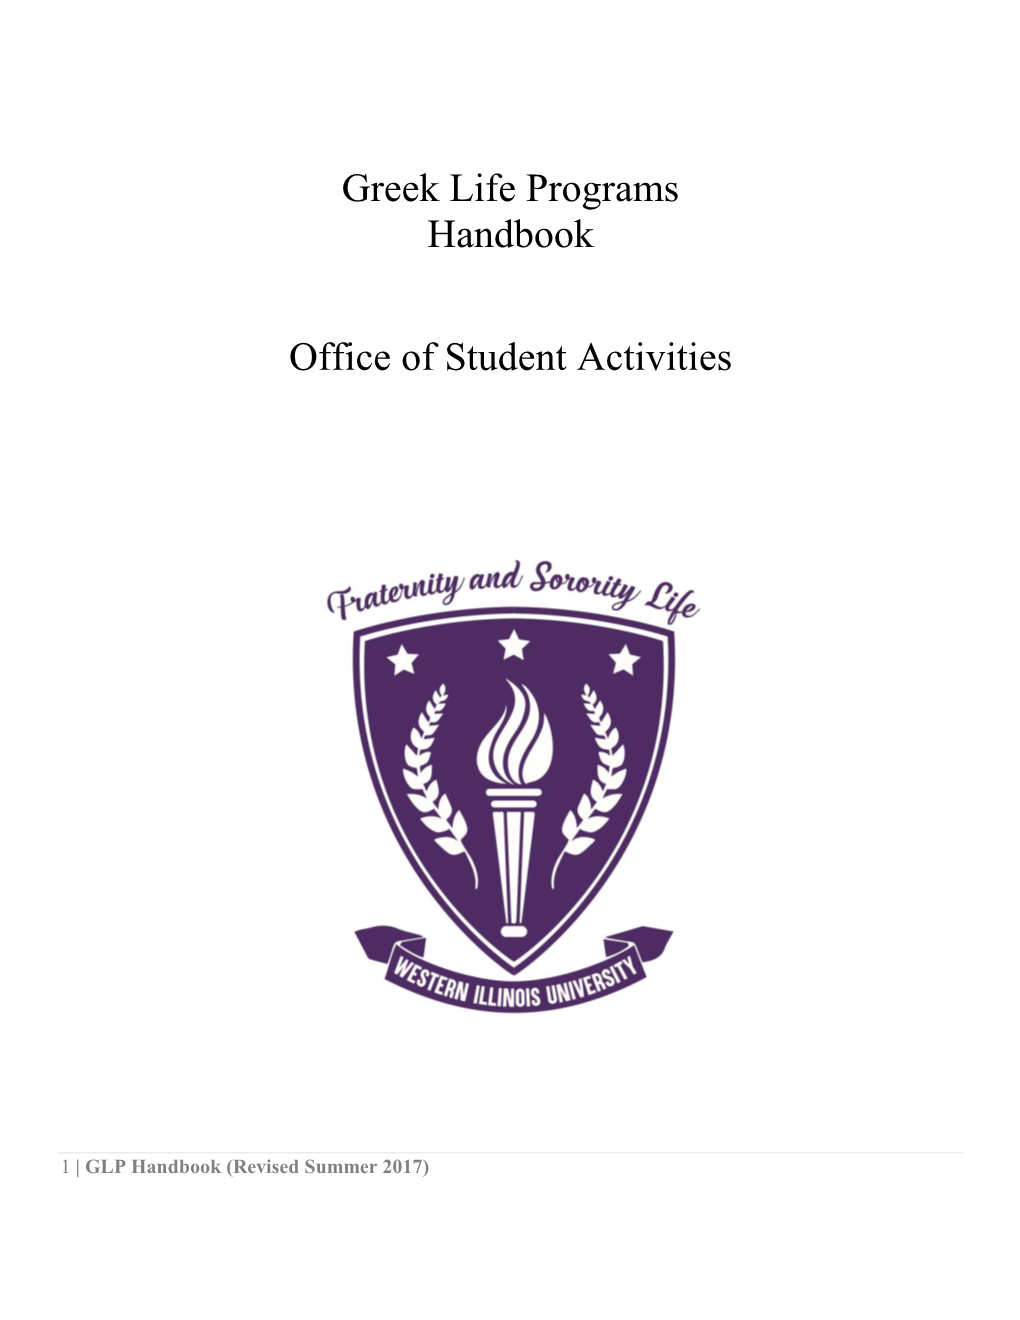 Greek Life Programs Handbook Office of Student Activities